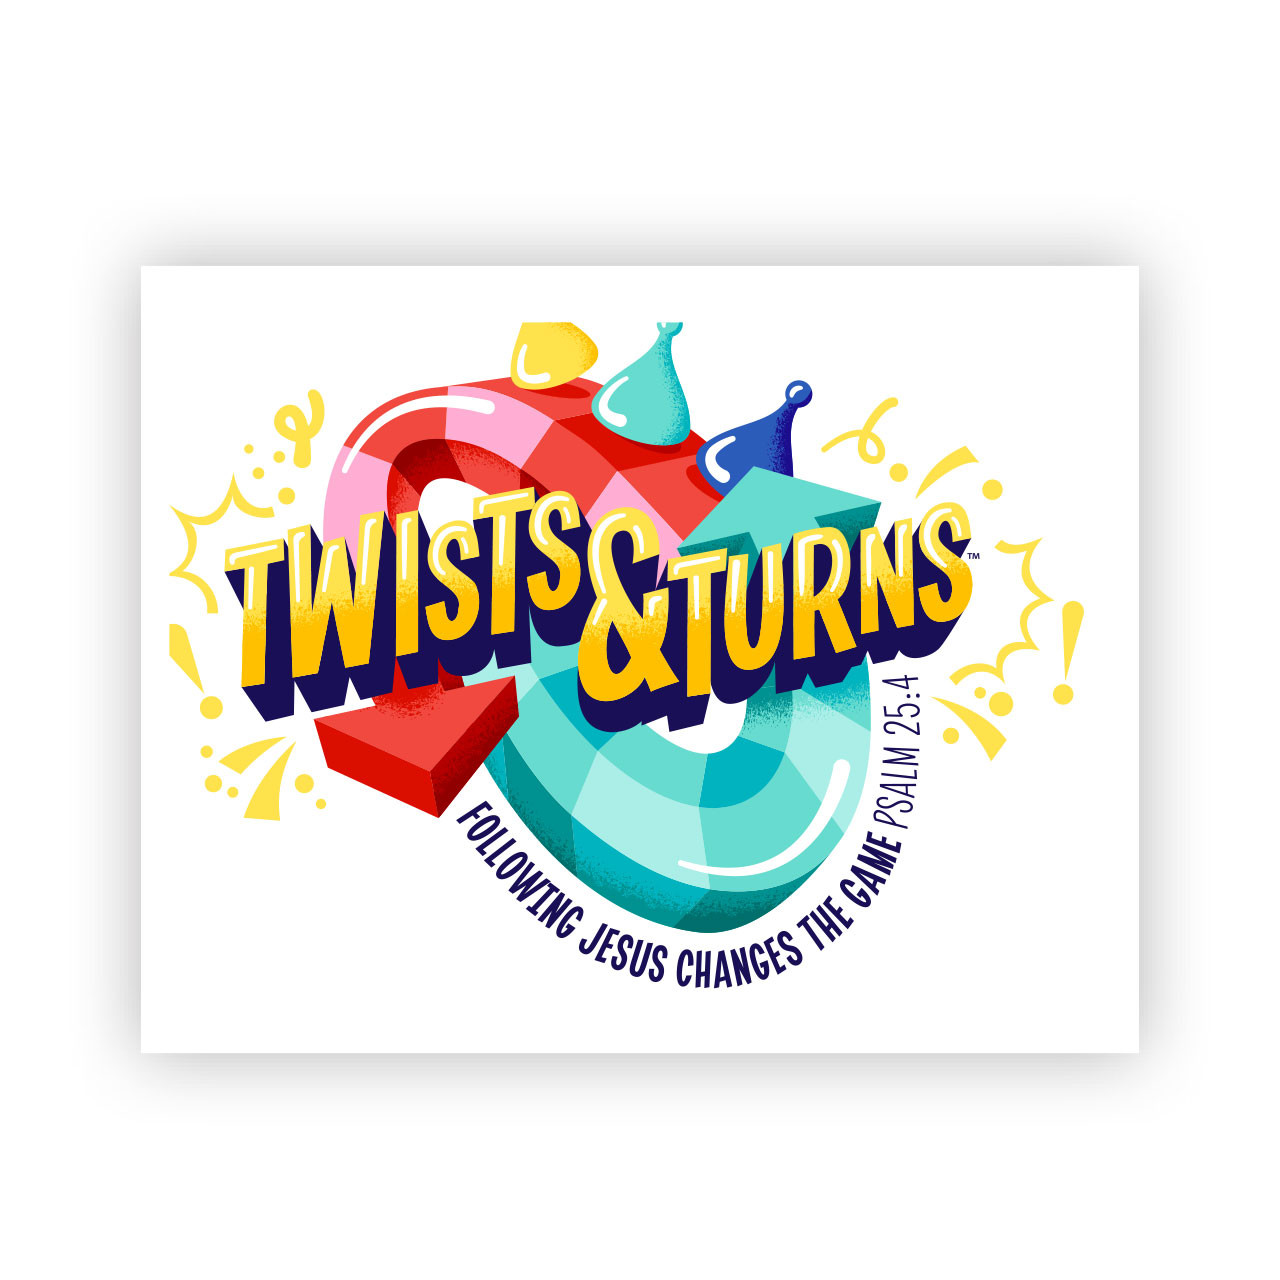 VBS 2023 - Twists & Turns - Lifeway VBS